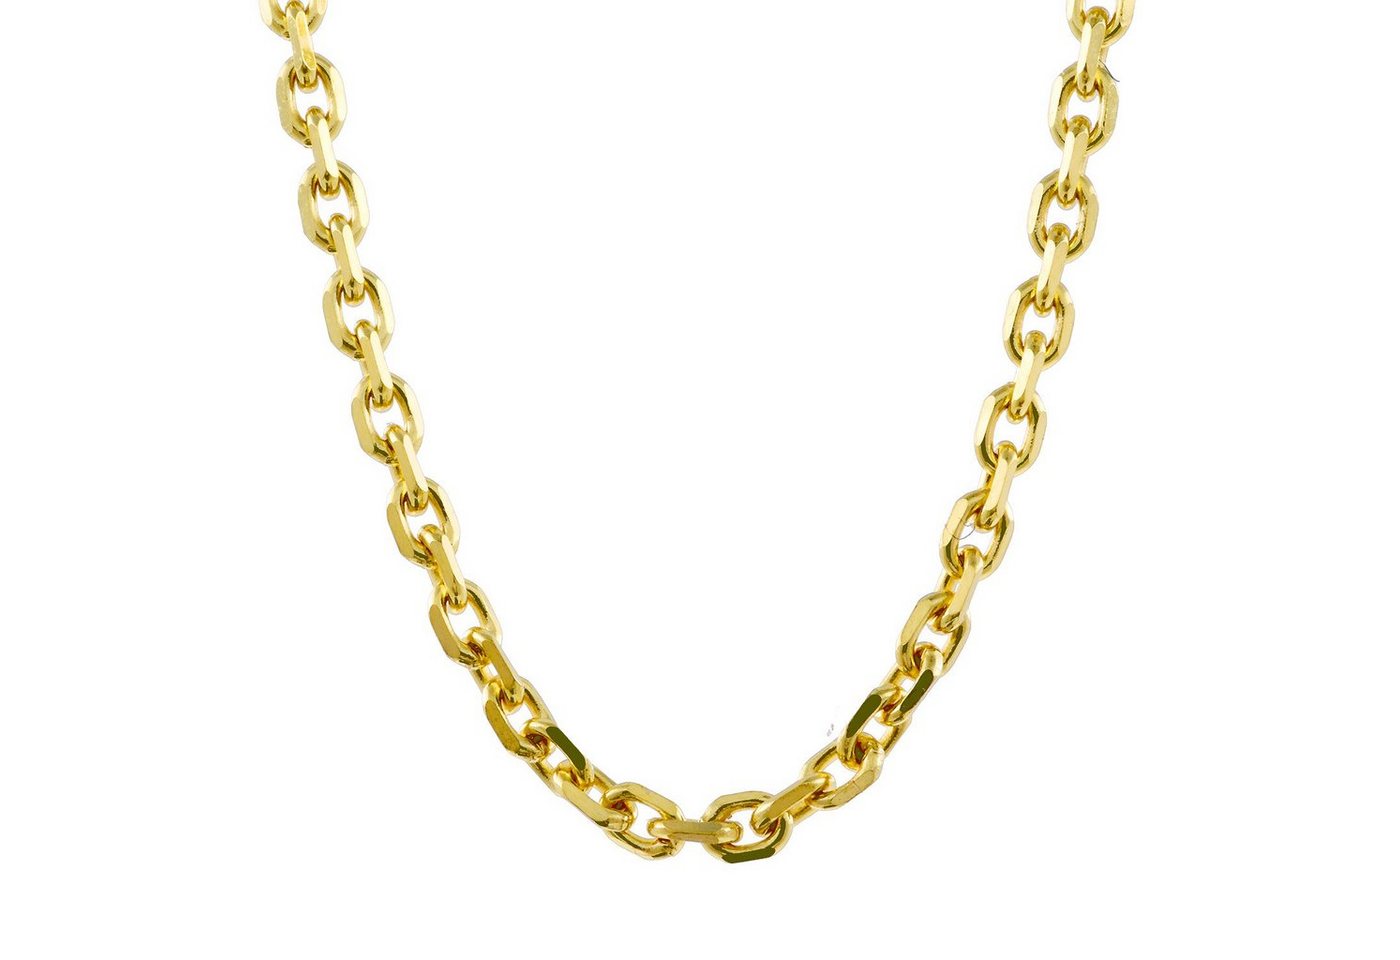 HOPLO Goldkette Ankerkette diamantiert Länge 55cm - Breite 1,3mm - 333-8 Karat Gold, Made in Germany von HOPLO